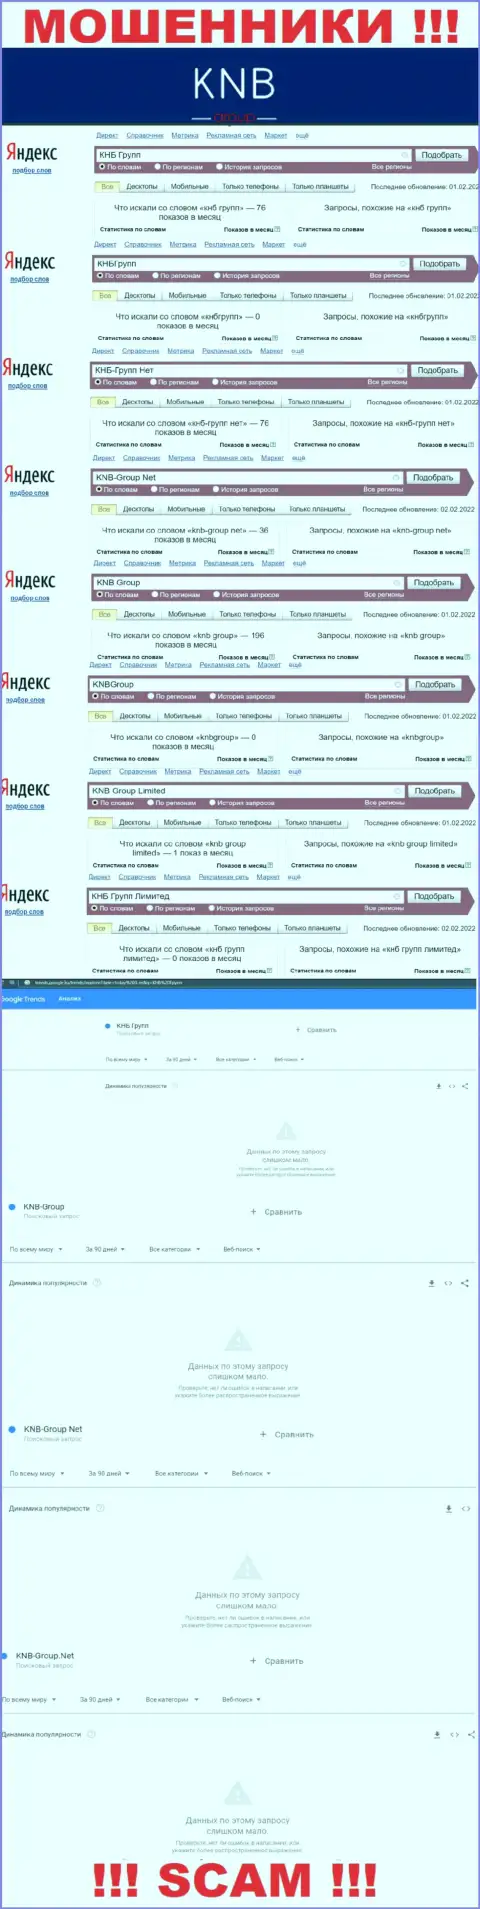 Скриншот результатов online-запросов по преступно действующей конторе КНБГрупп